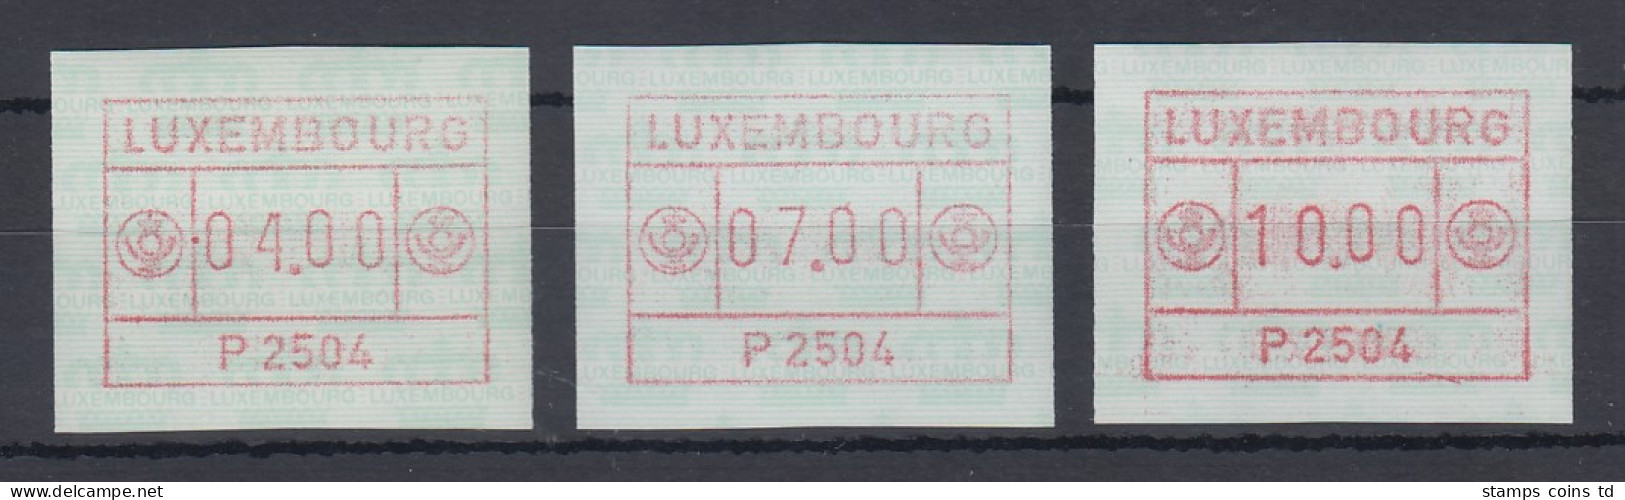 Luxemburg ATM P2504 Tastensatz 4-7-10 ** - Postage Labels